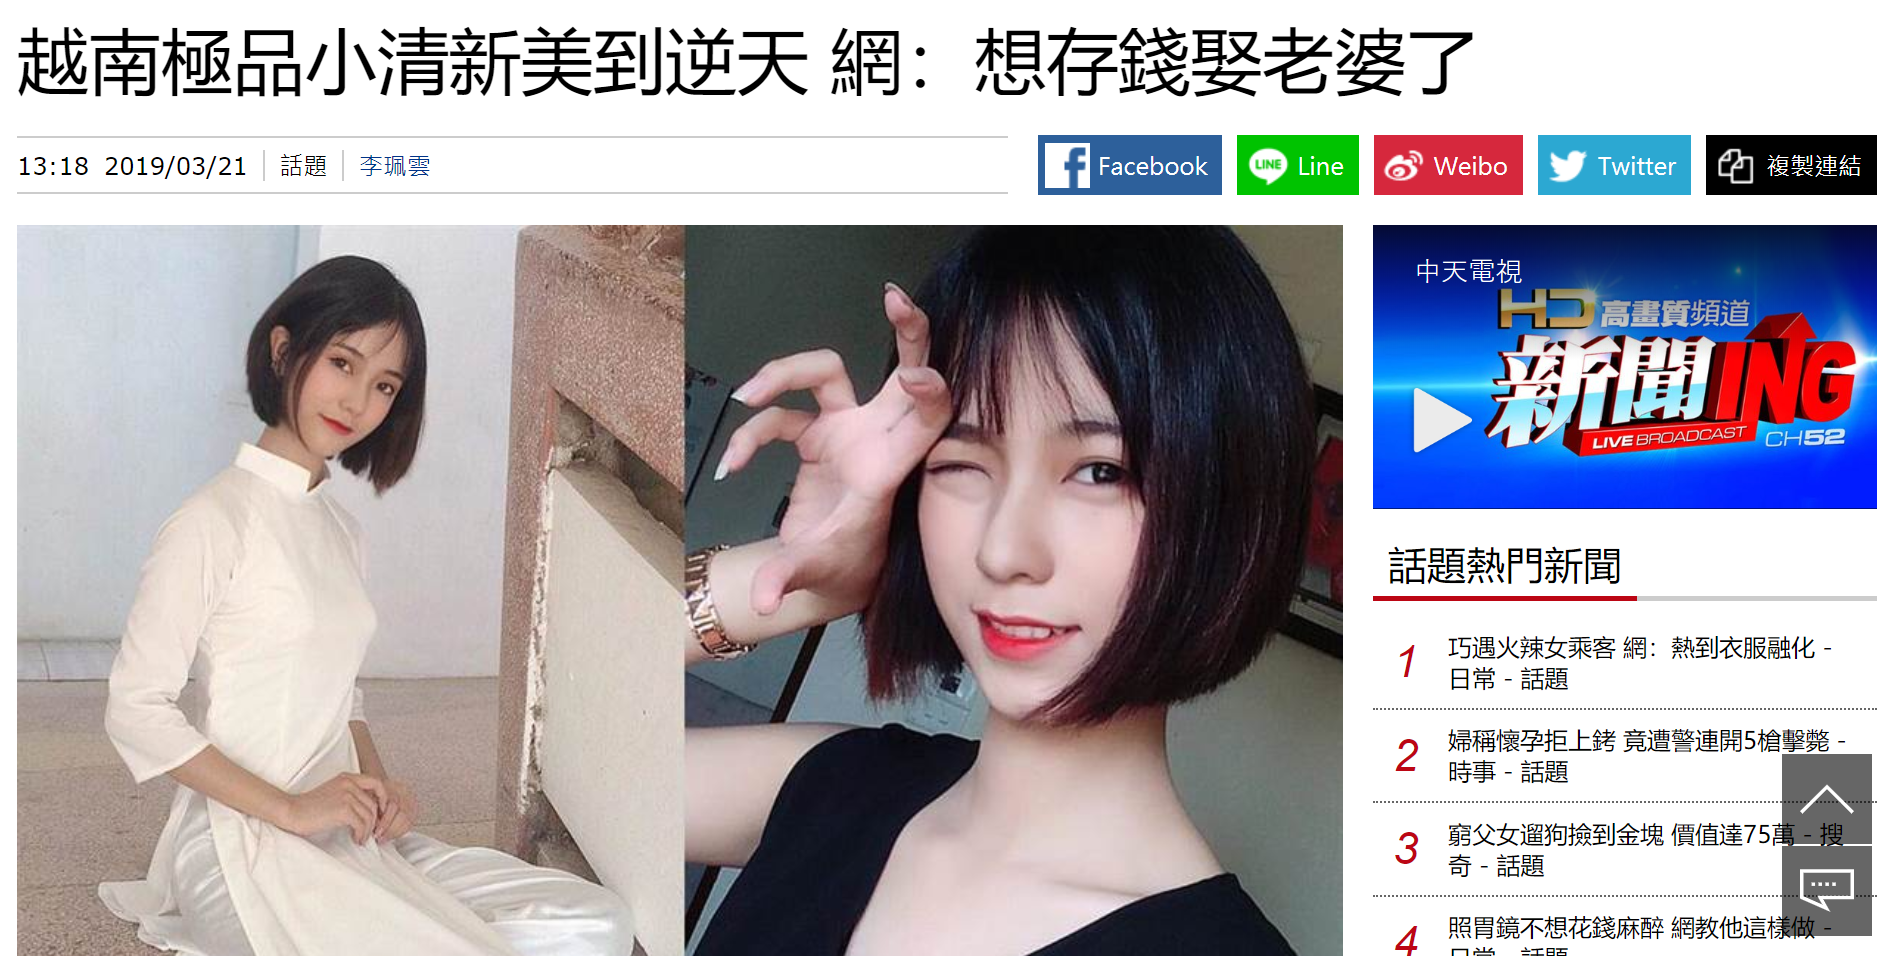 Nữ sinh 2001 được báo Trung gọi là cực phẩm hot girl với nhan sắc trong sáng tựa nữ chính phim thanh xuân vườn trường-2